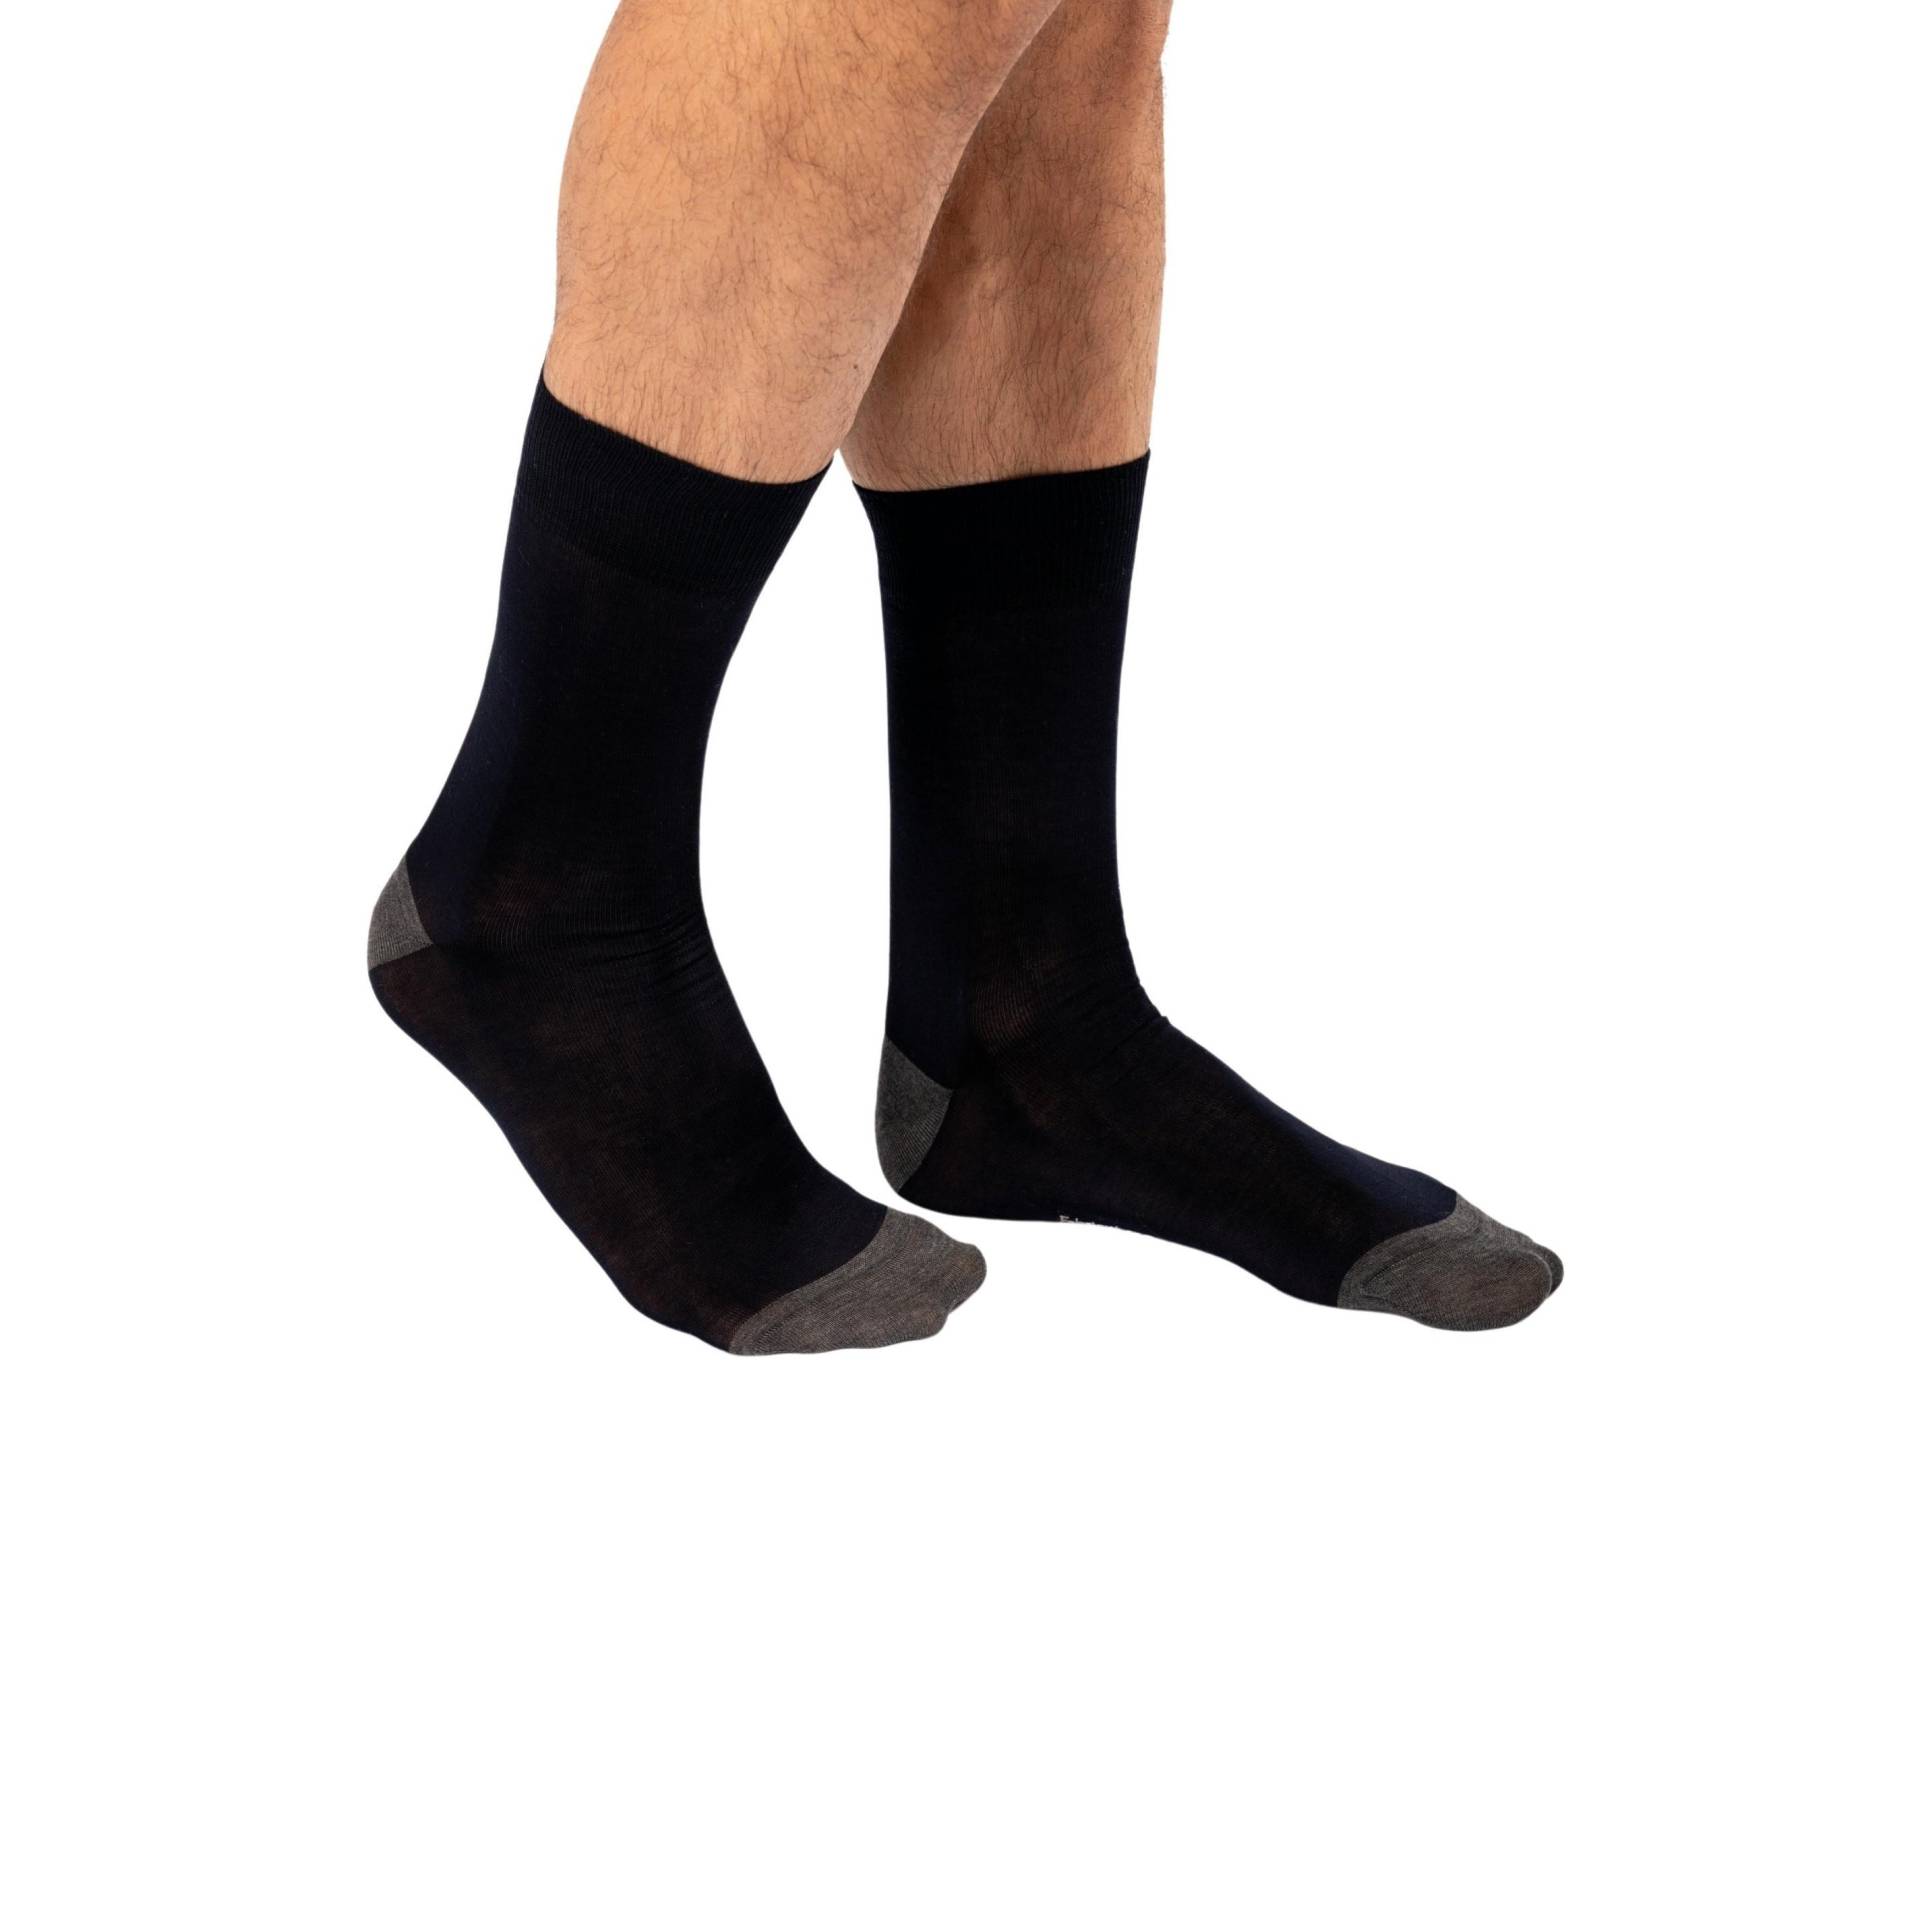 Halbhohe Socken Aus Mercerisierter Baumwolle Origine France Garantiert Herren  43-46 von Kariban